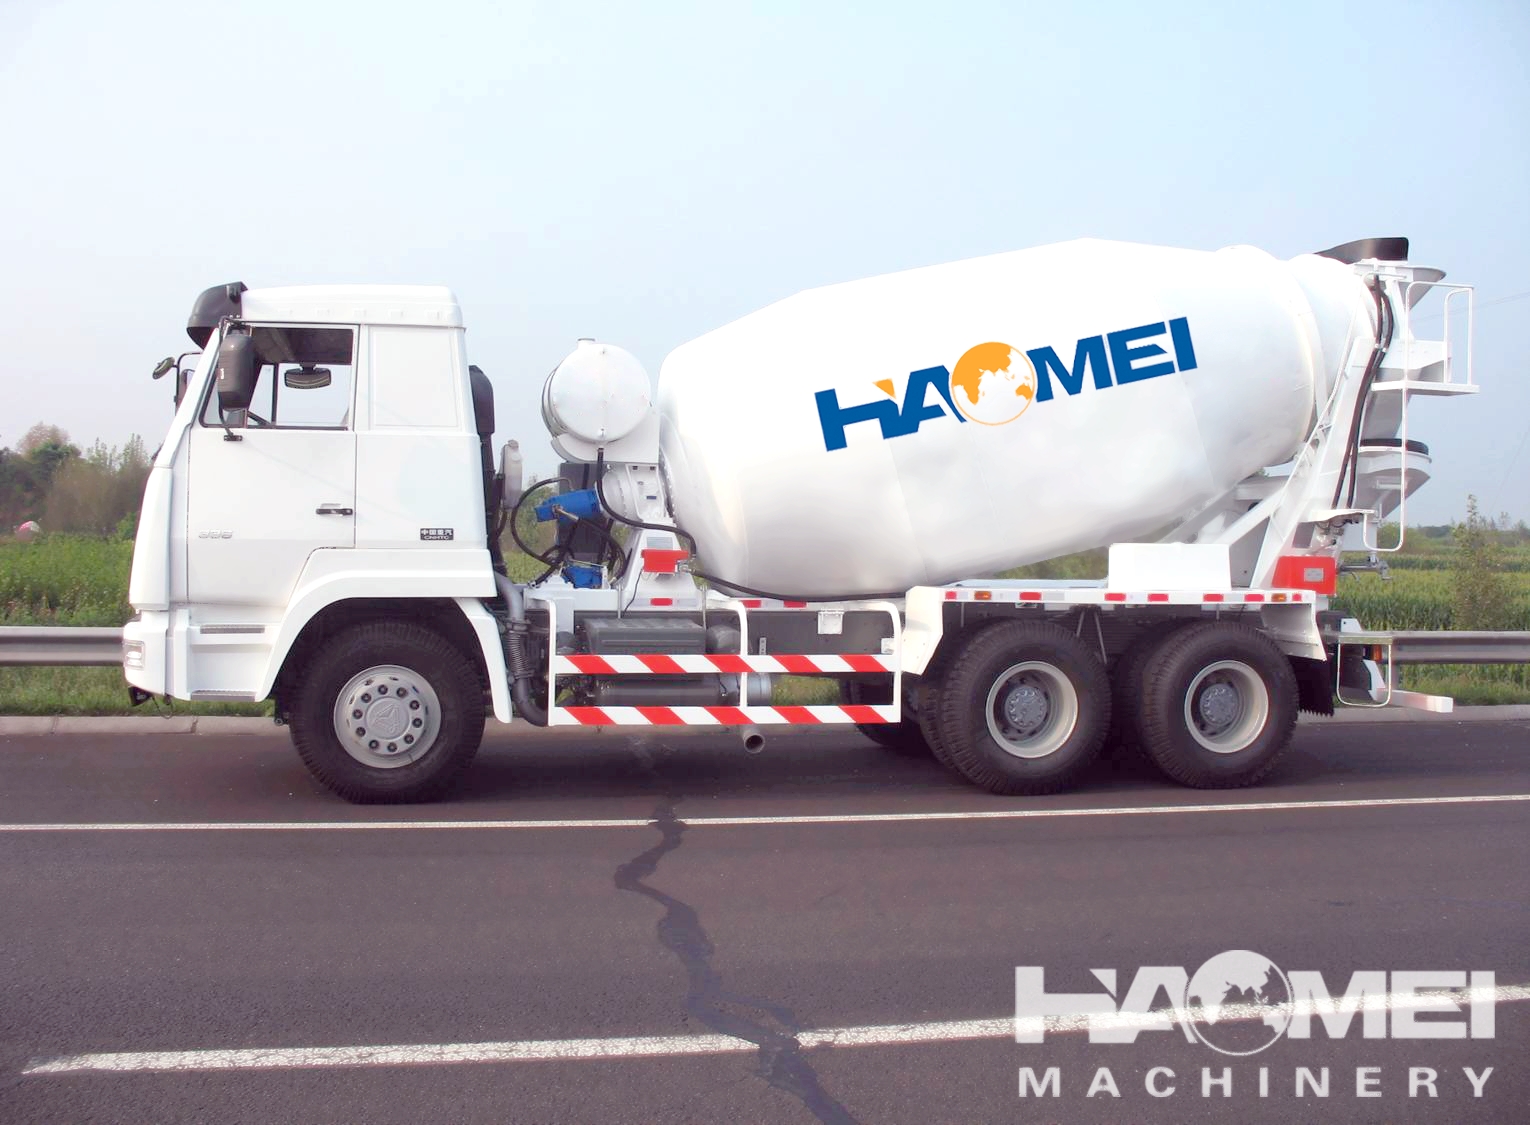 HM16-D Concrete Truck Mixer